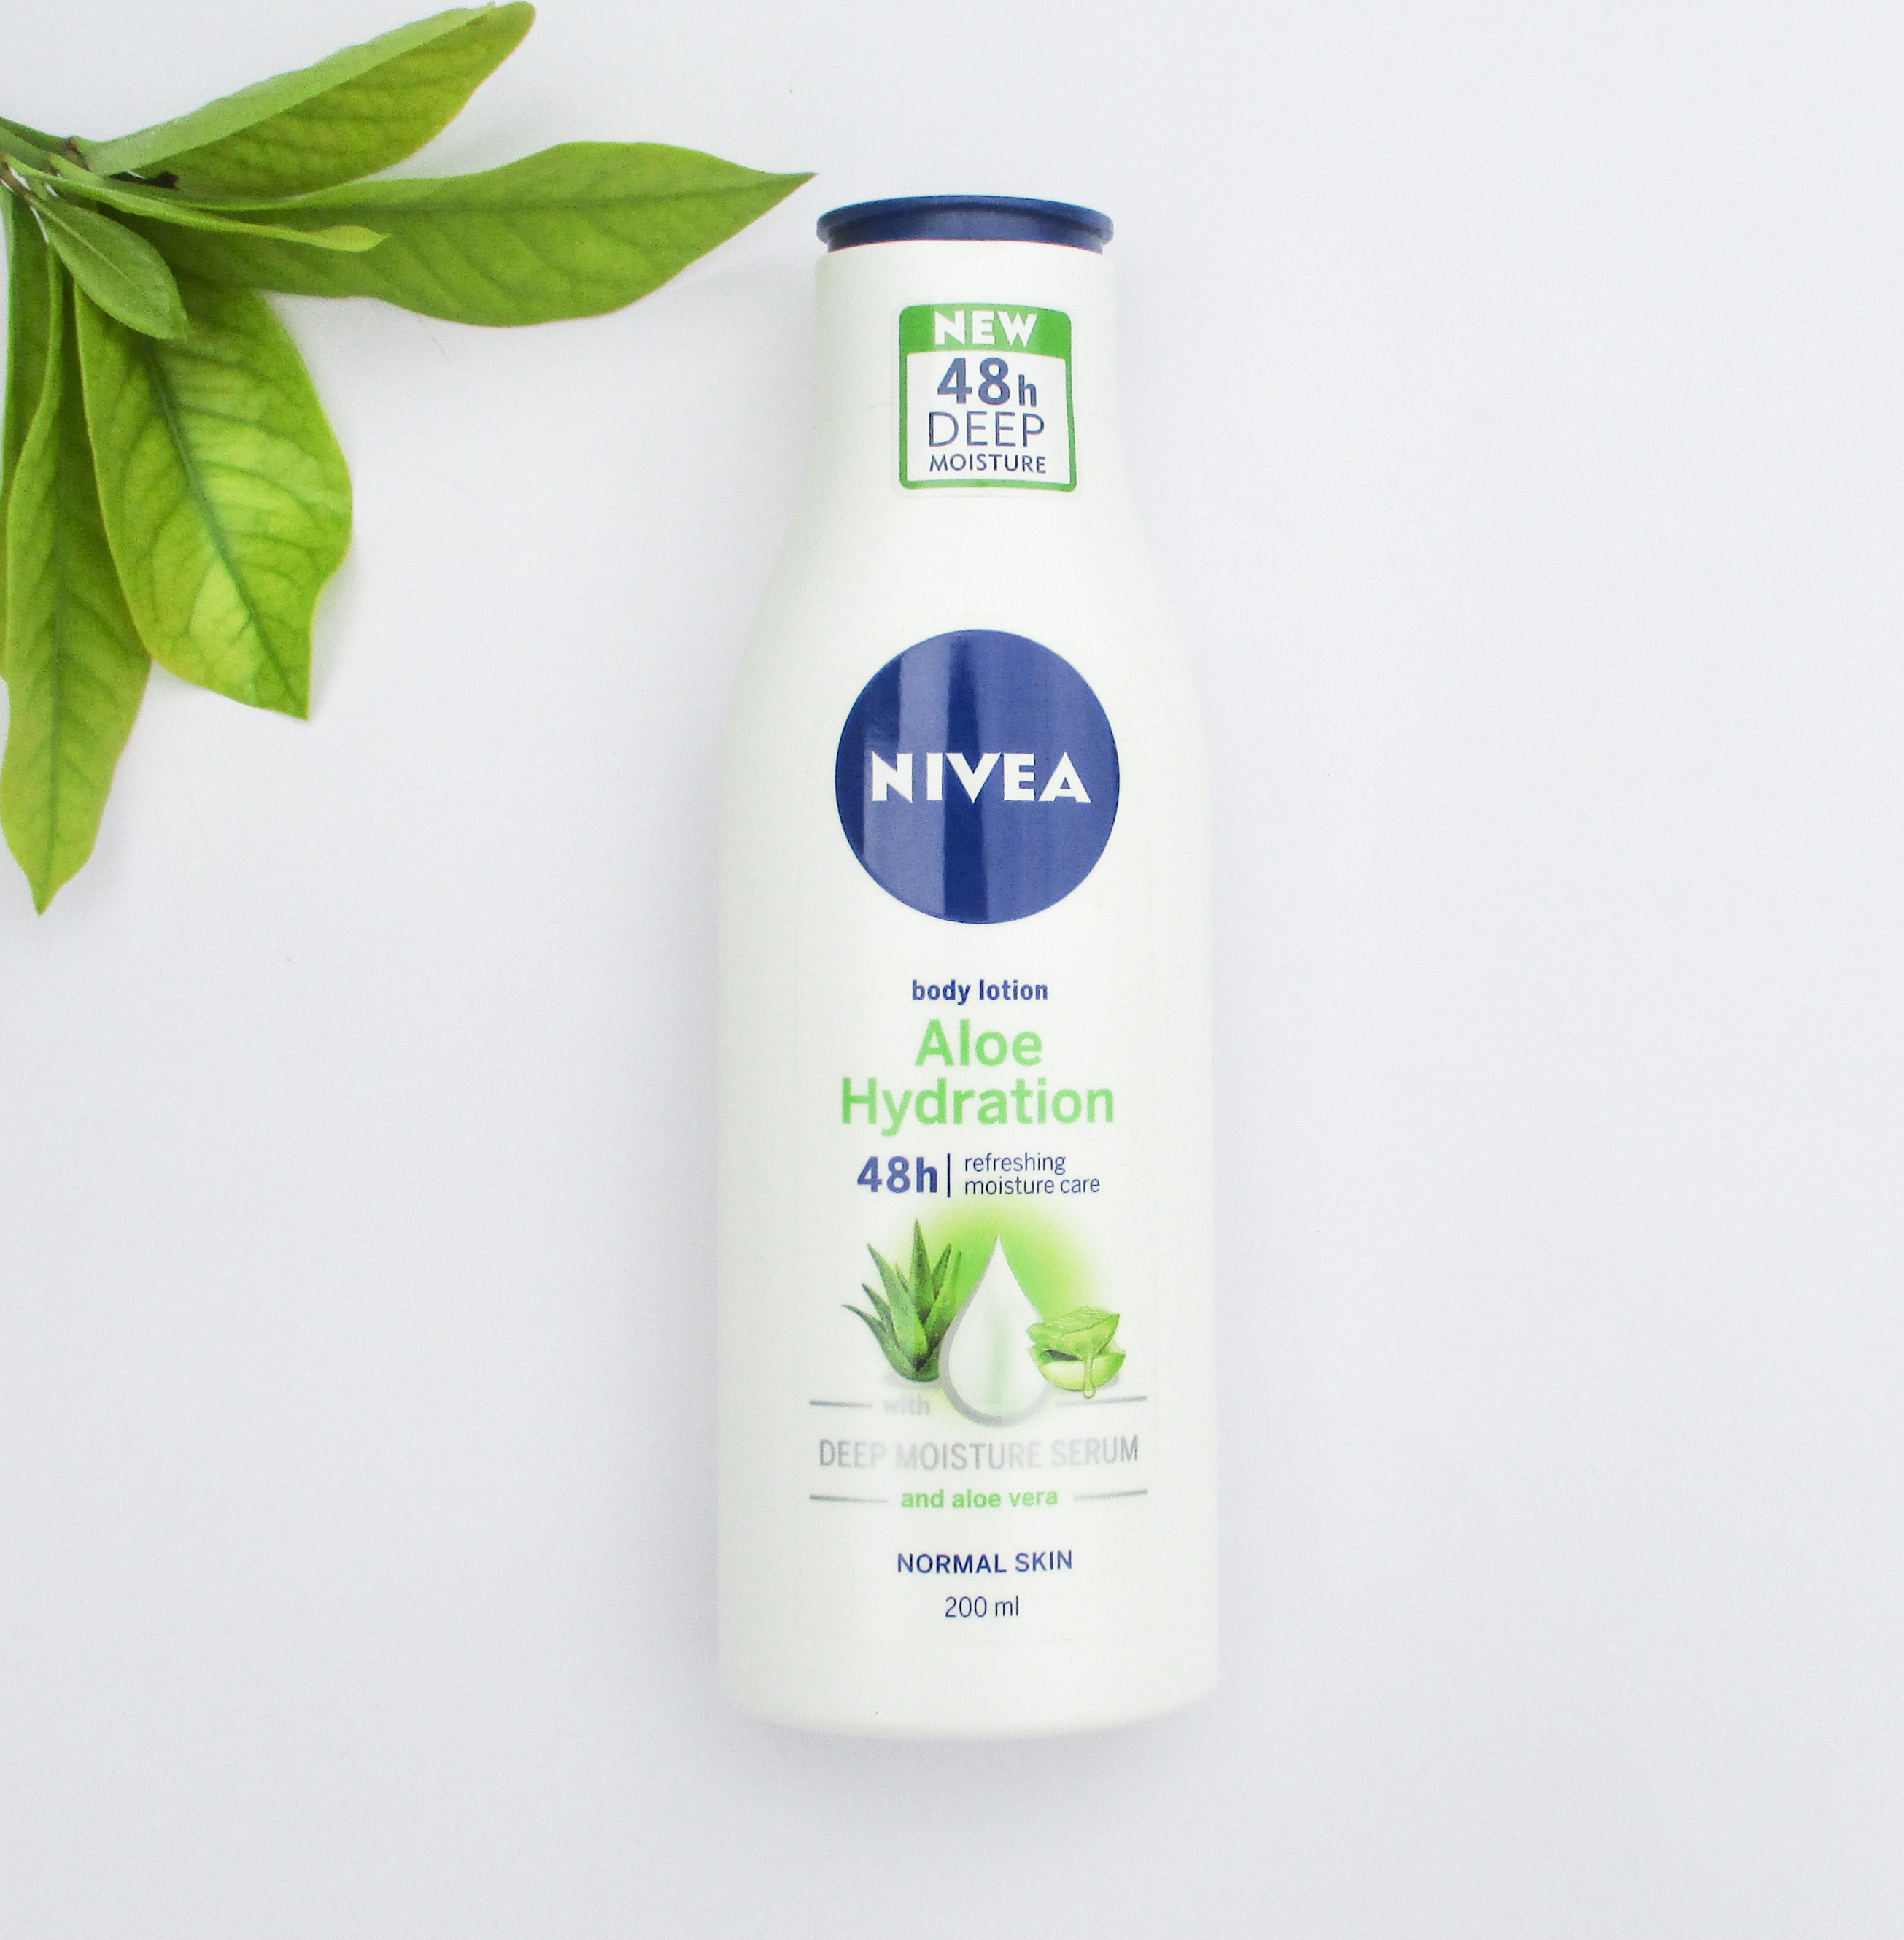 Nivea Aloe Hydration Body Lotion Review